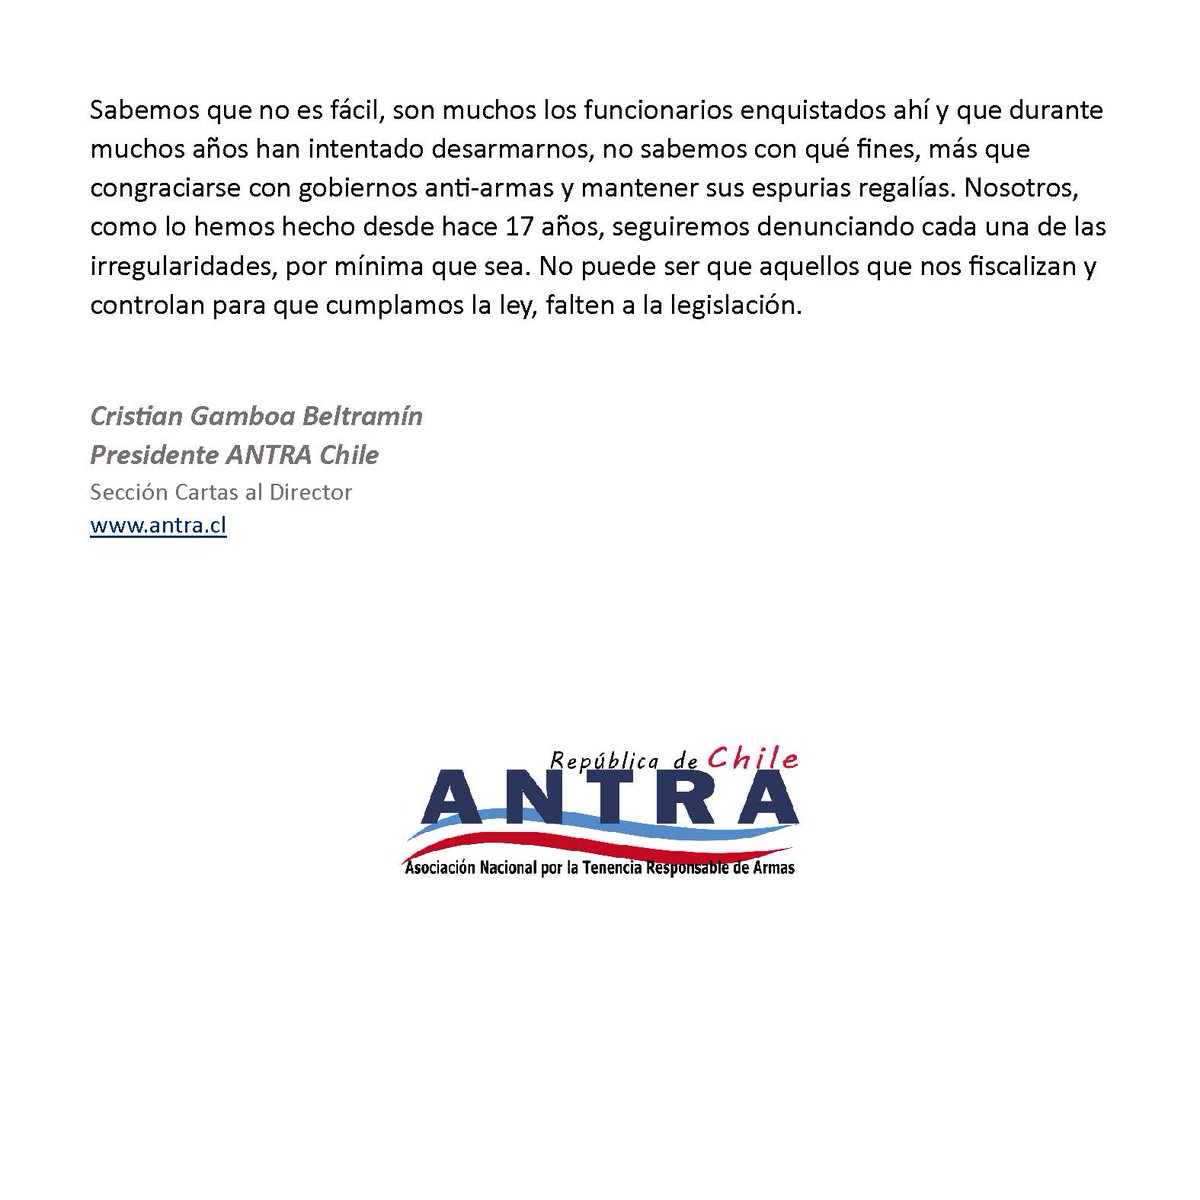 Pase y lea la nueva sección de 'Cartas al Director' de @ANTRA_Chile, abrimos con 'El General en su Laberinto'. Enterese, opine, participe. antra.cl/el-general-en-… @sgmu @lucorcas @GarciaMahias